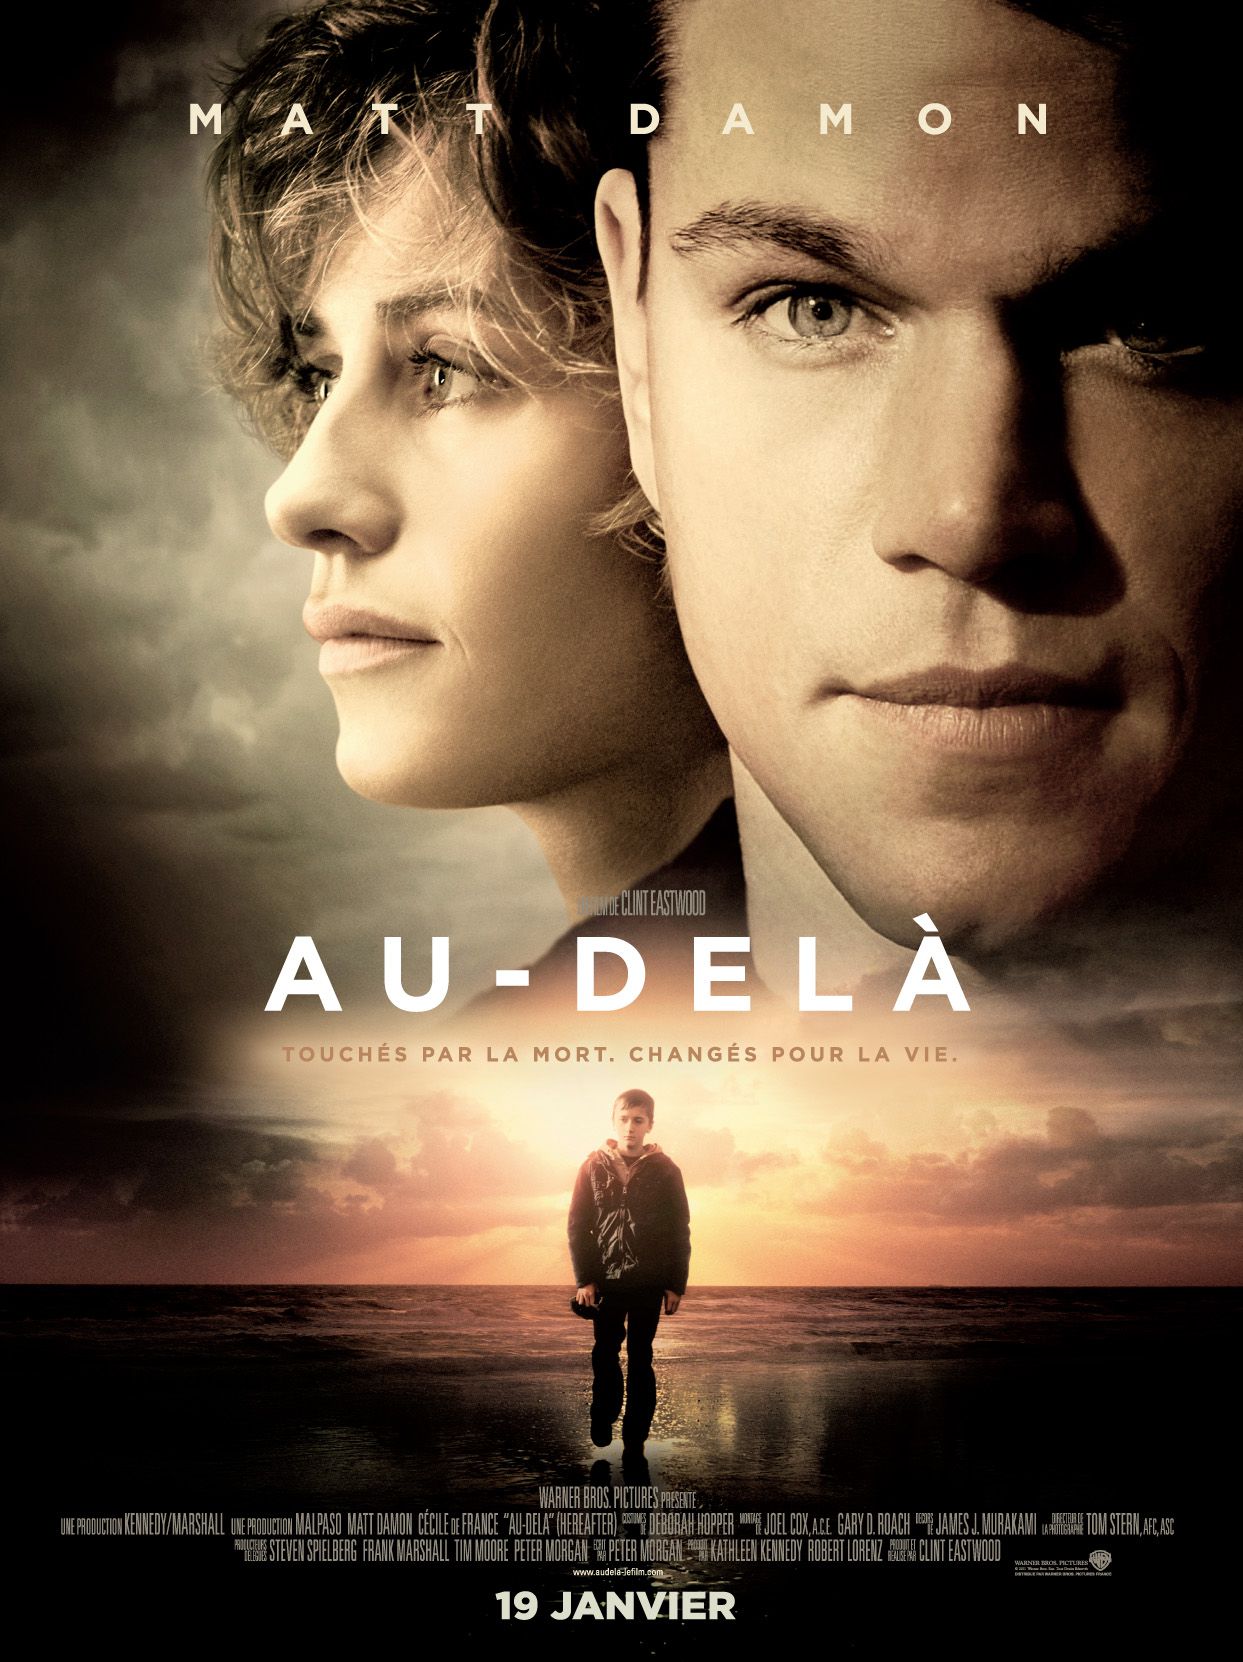  L'affiche du film "Au-delà" avec Matt Damon et Cécile de France @Warner Bros